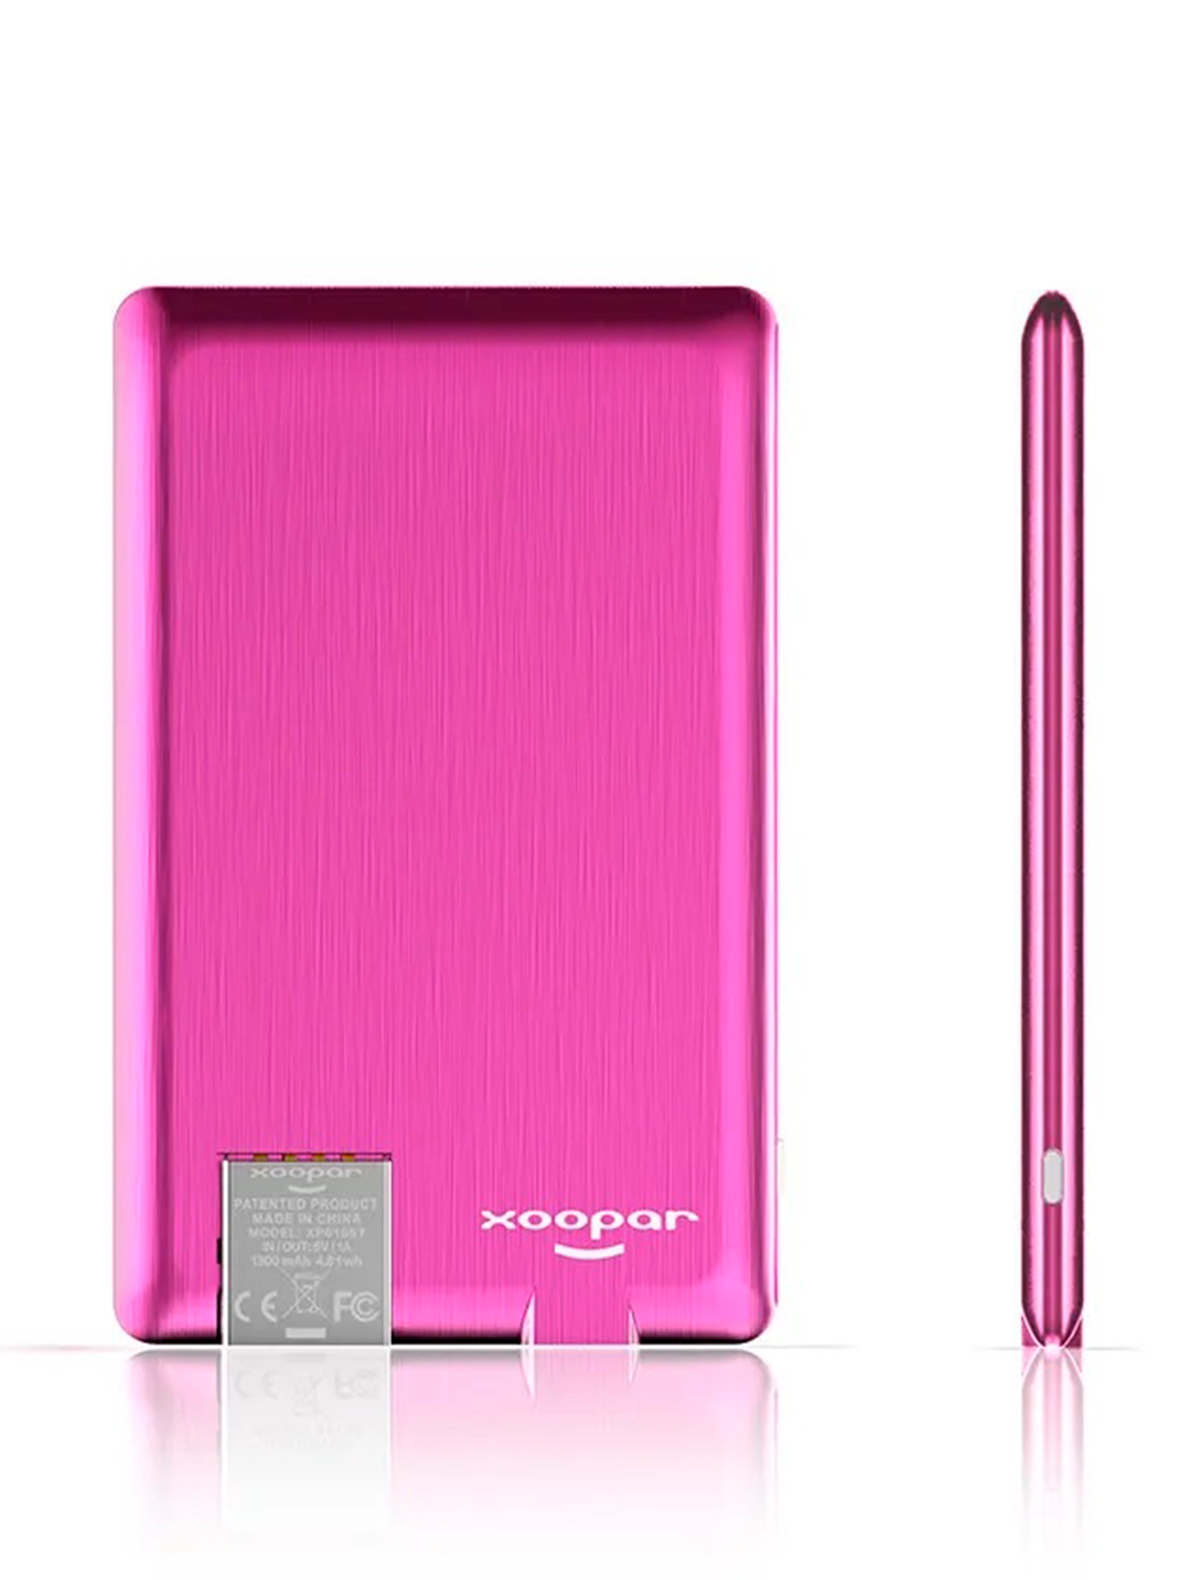 Зарядное устройство Xoopar 2376314, цвет розовый 5354520180793 - фото 2